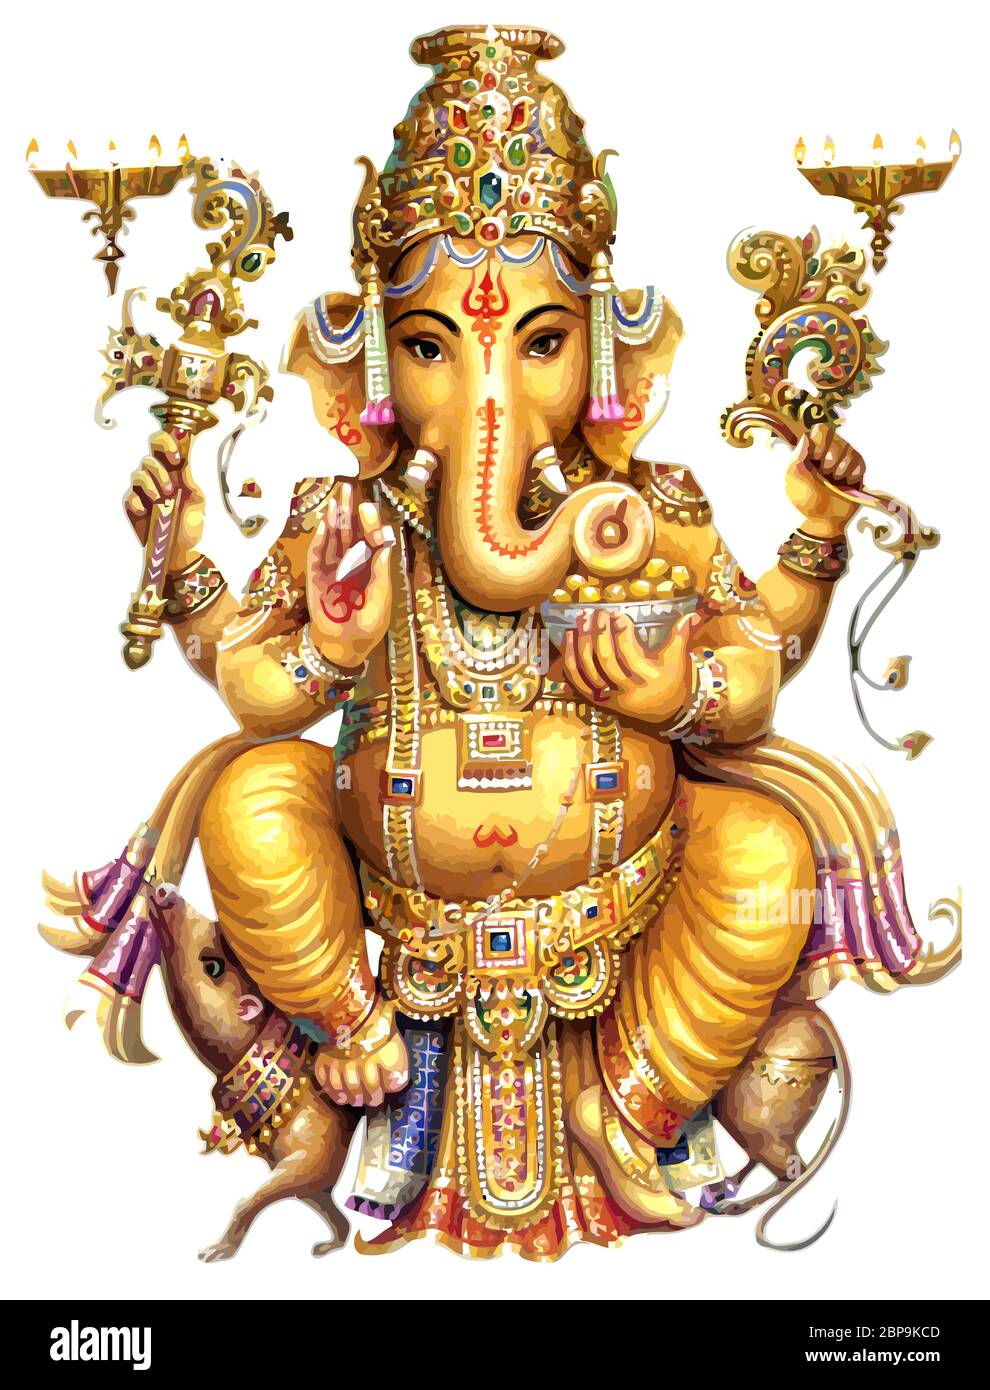 seated golden  Ganesha hindu lord faith mythology bless god illustration Stock Photo